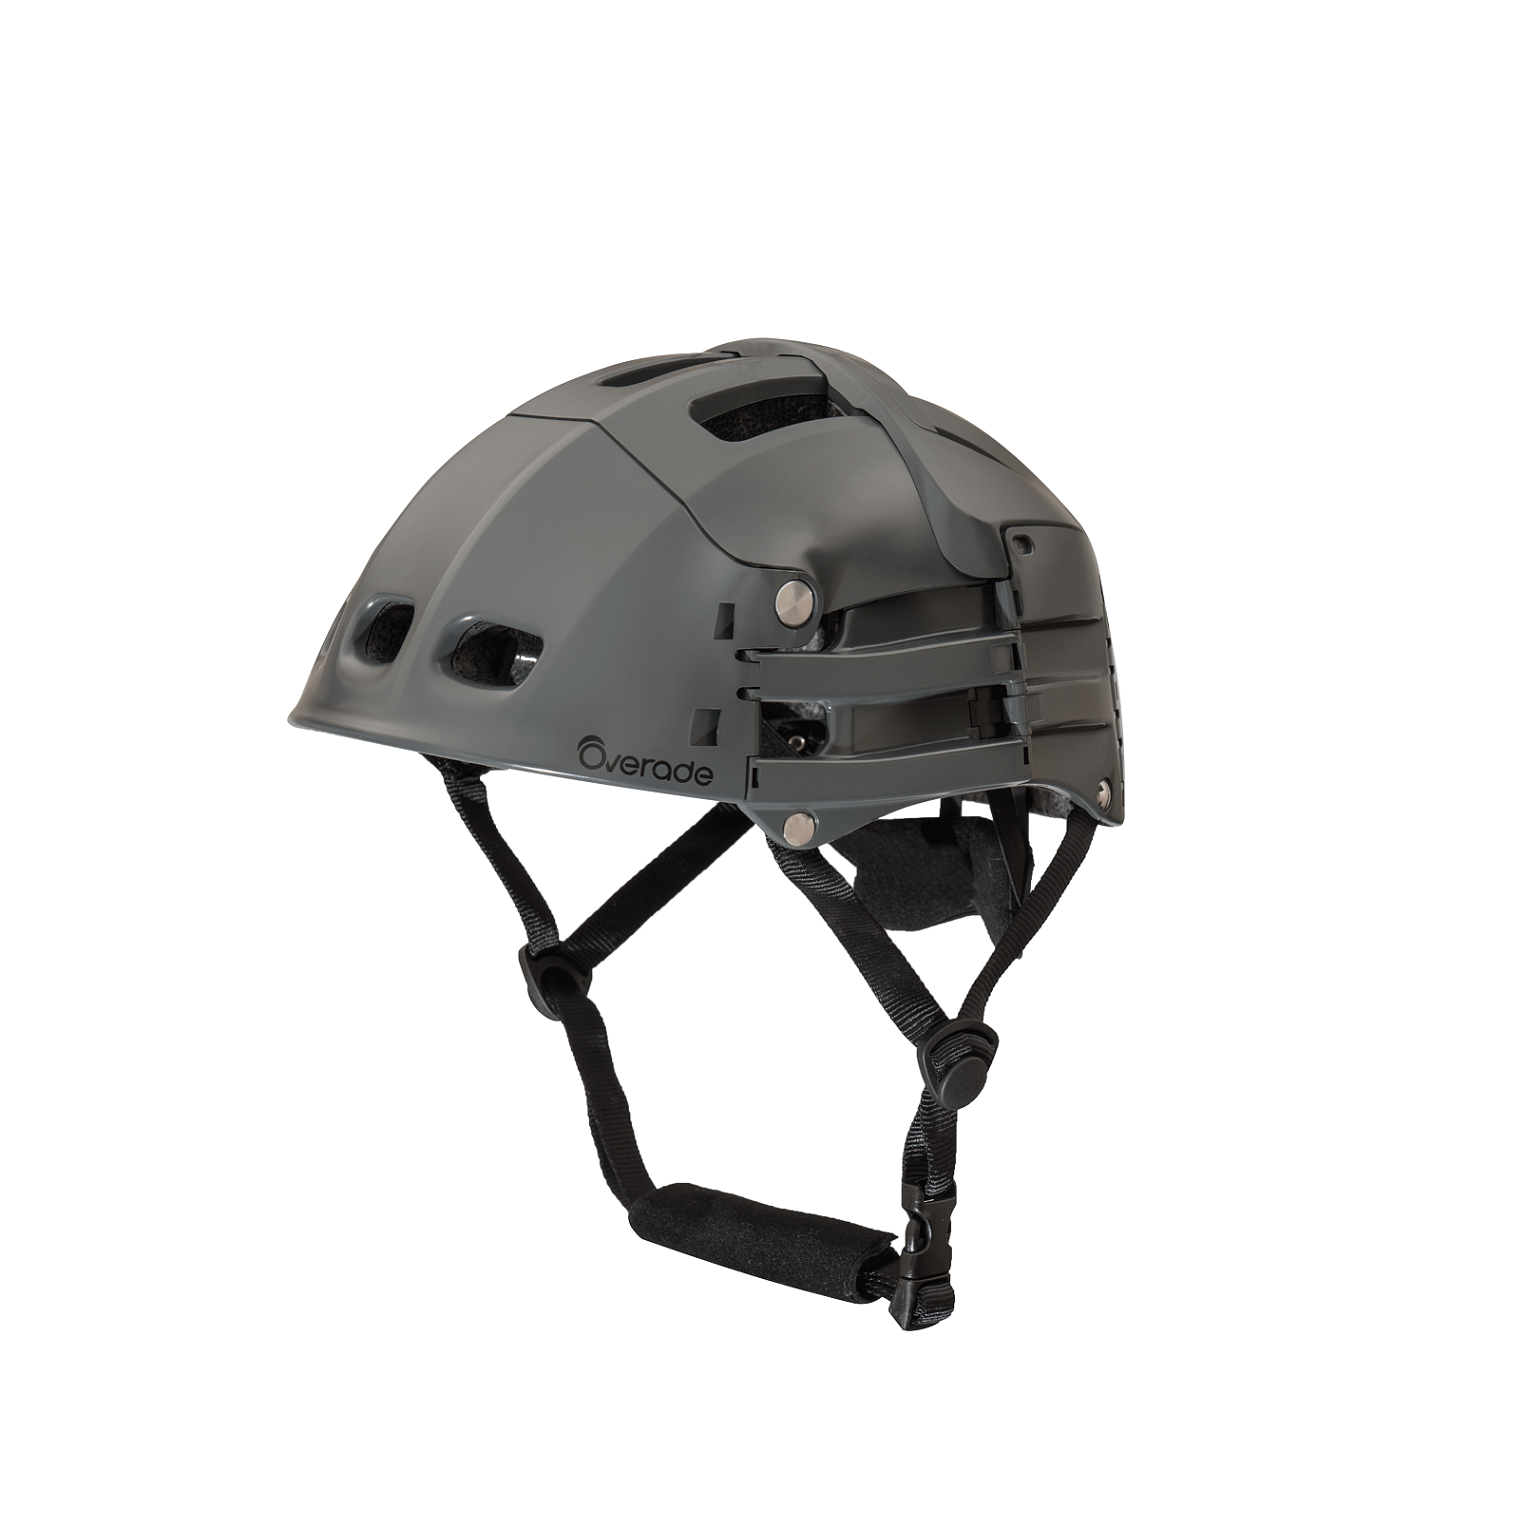 Overade Plixi Fit Helm faltbarer Fahrradhelm L/XL 59-62 cm grau